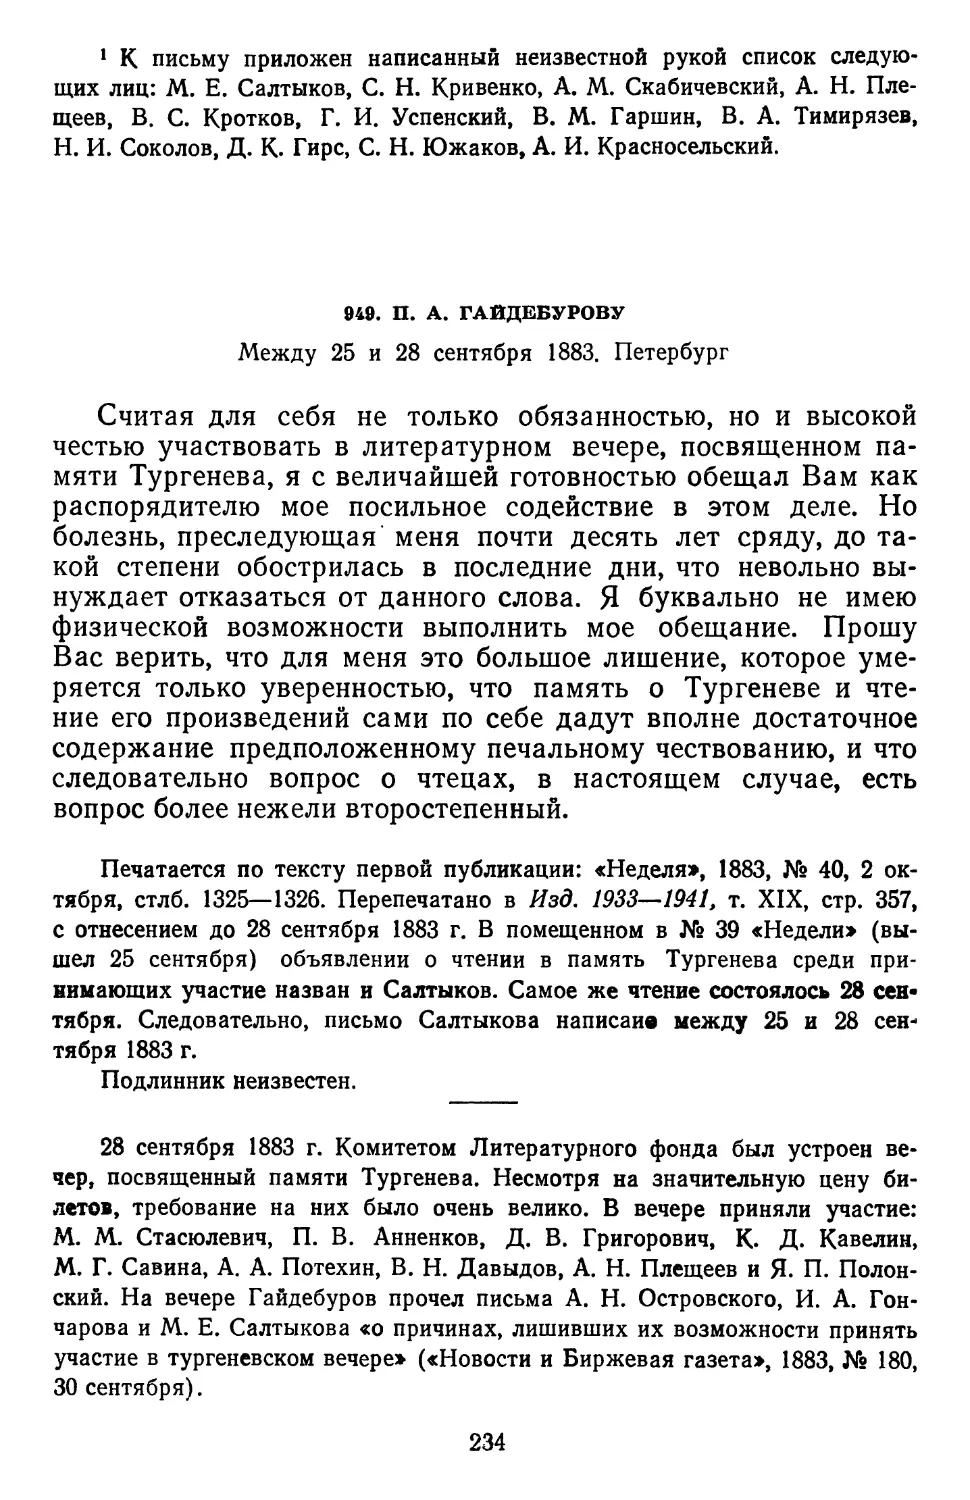 949.П. А. Гайдебурову. Между 25 и 28 сентября 1883. Петербург